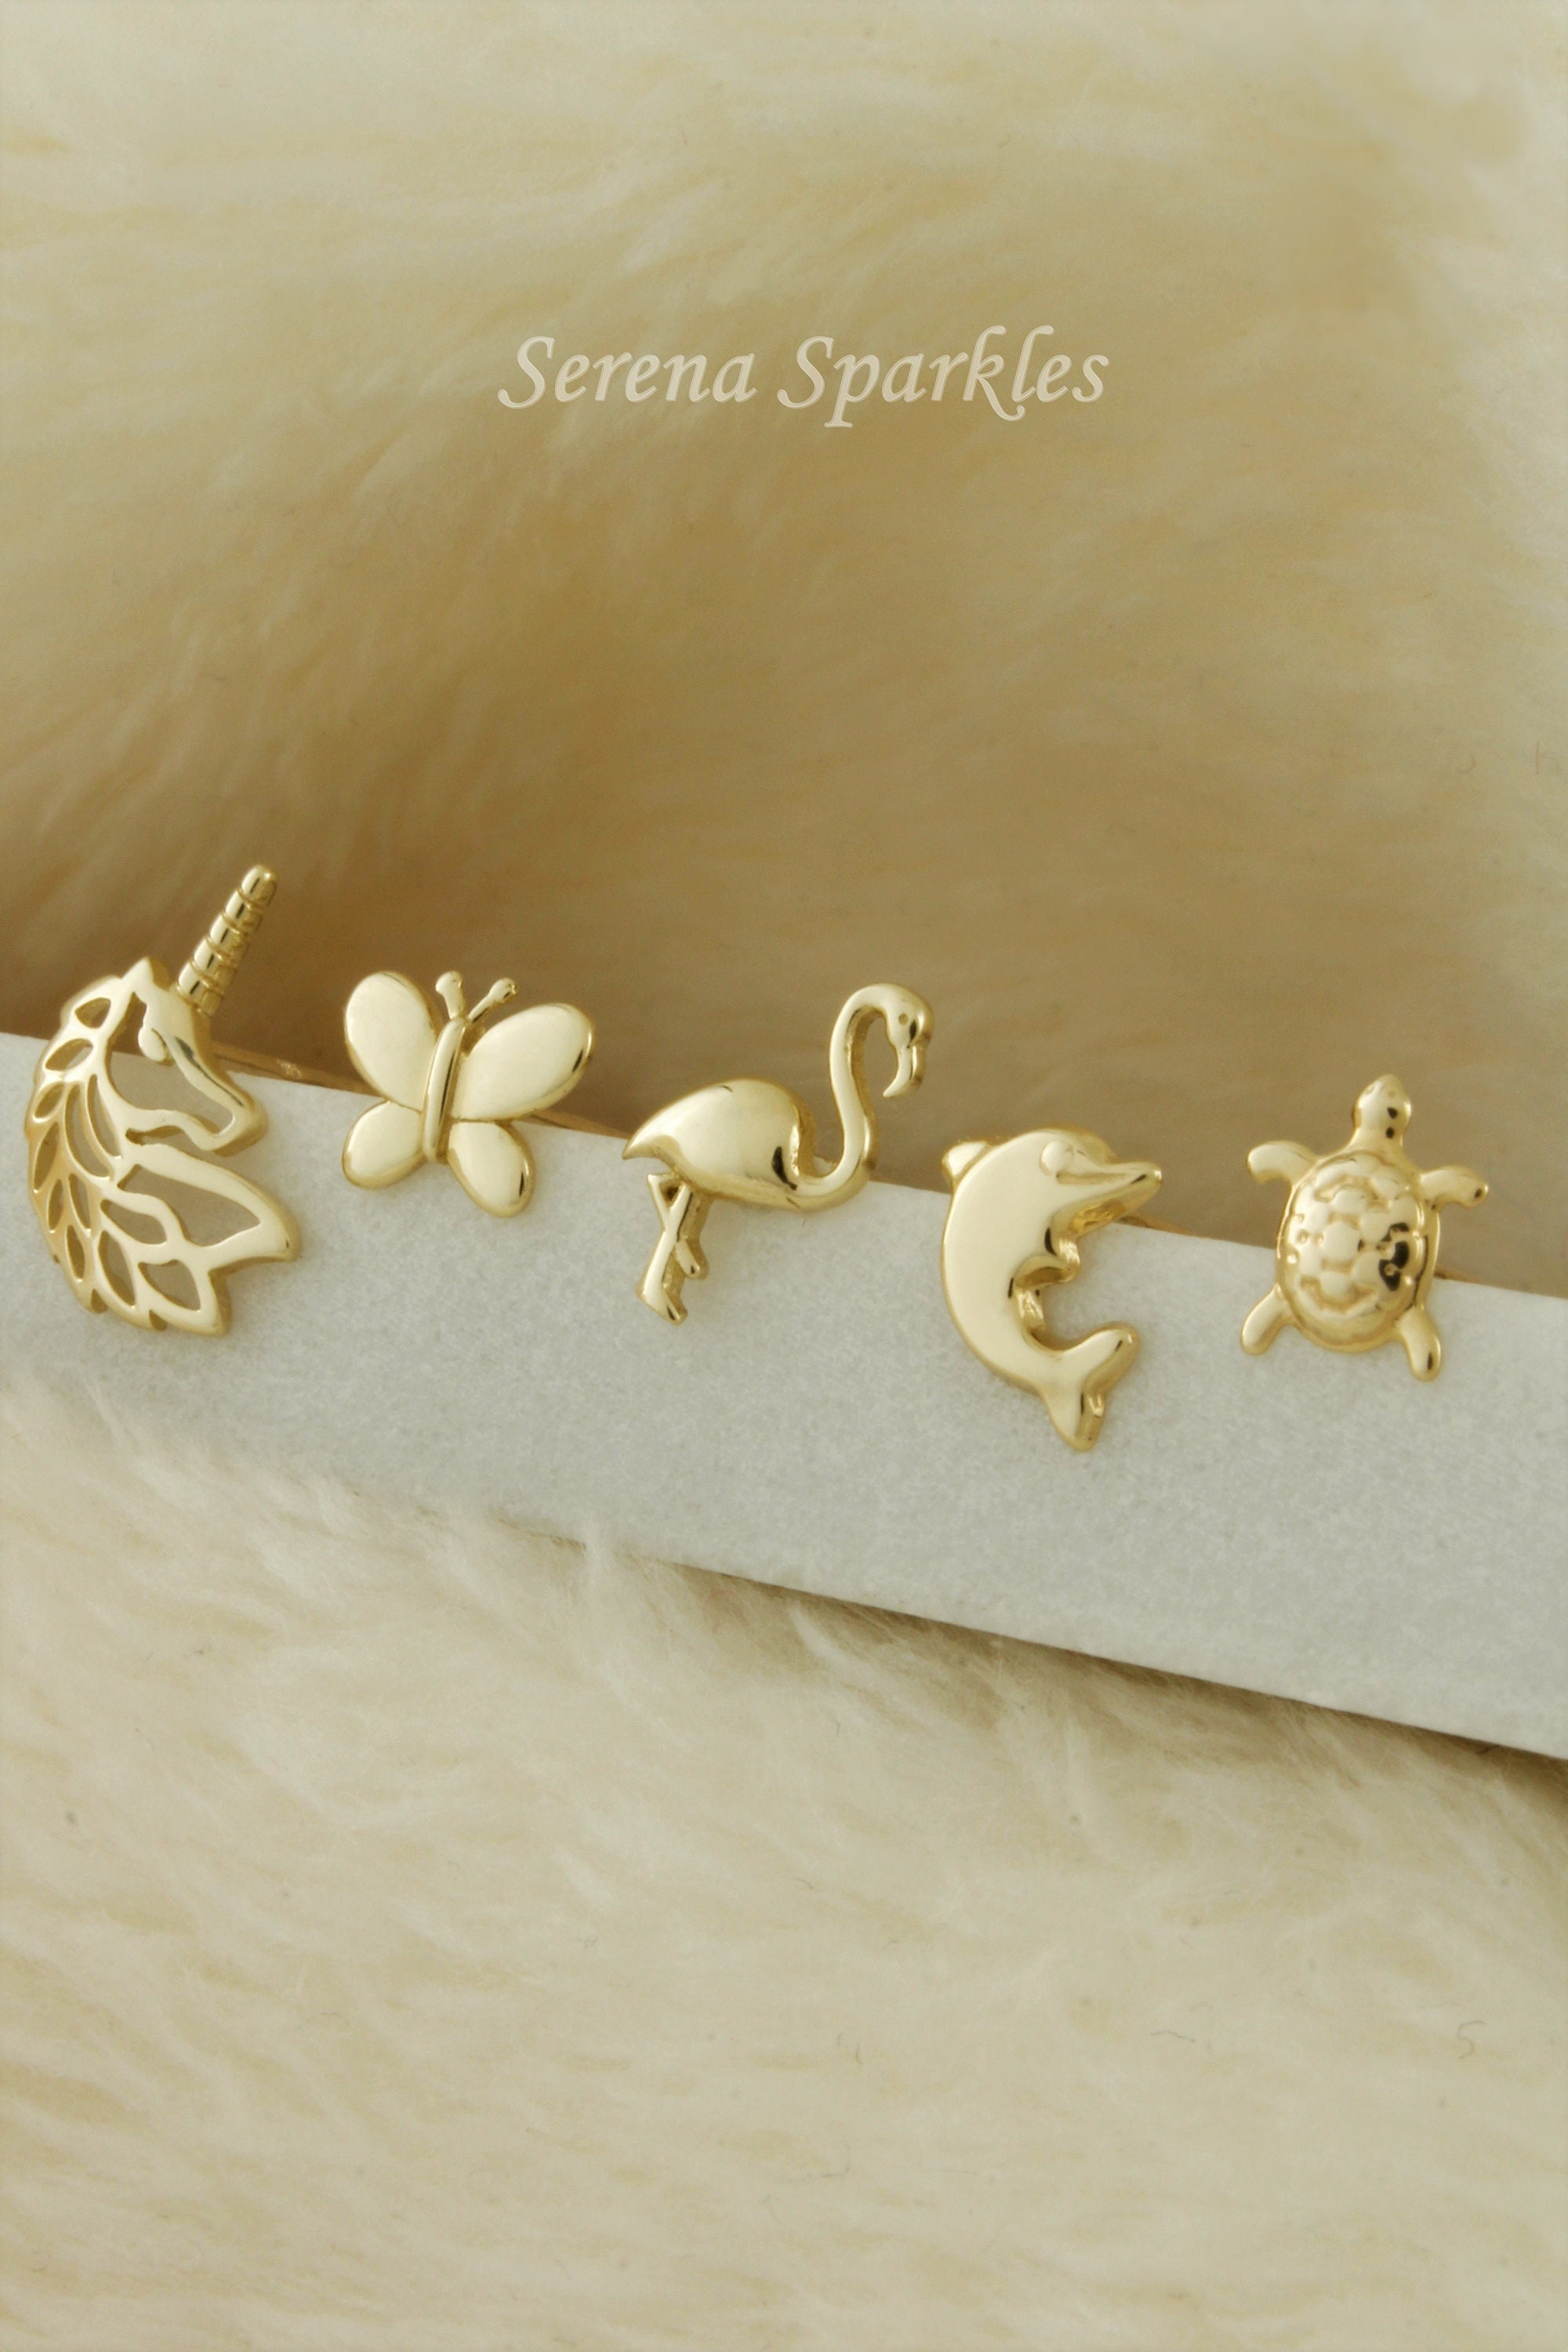 Girls' Rainbow Mane Unicorn Screw Back 14K Gold Earrings - in Season Jewelry